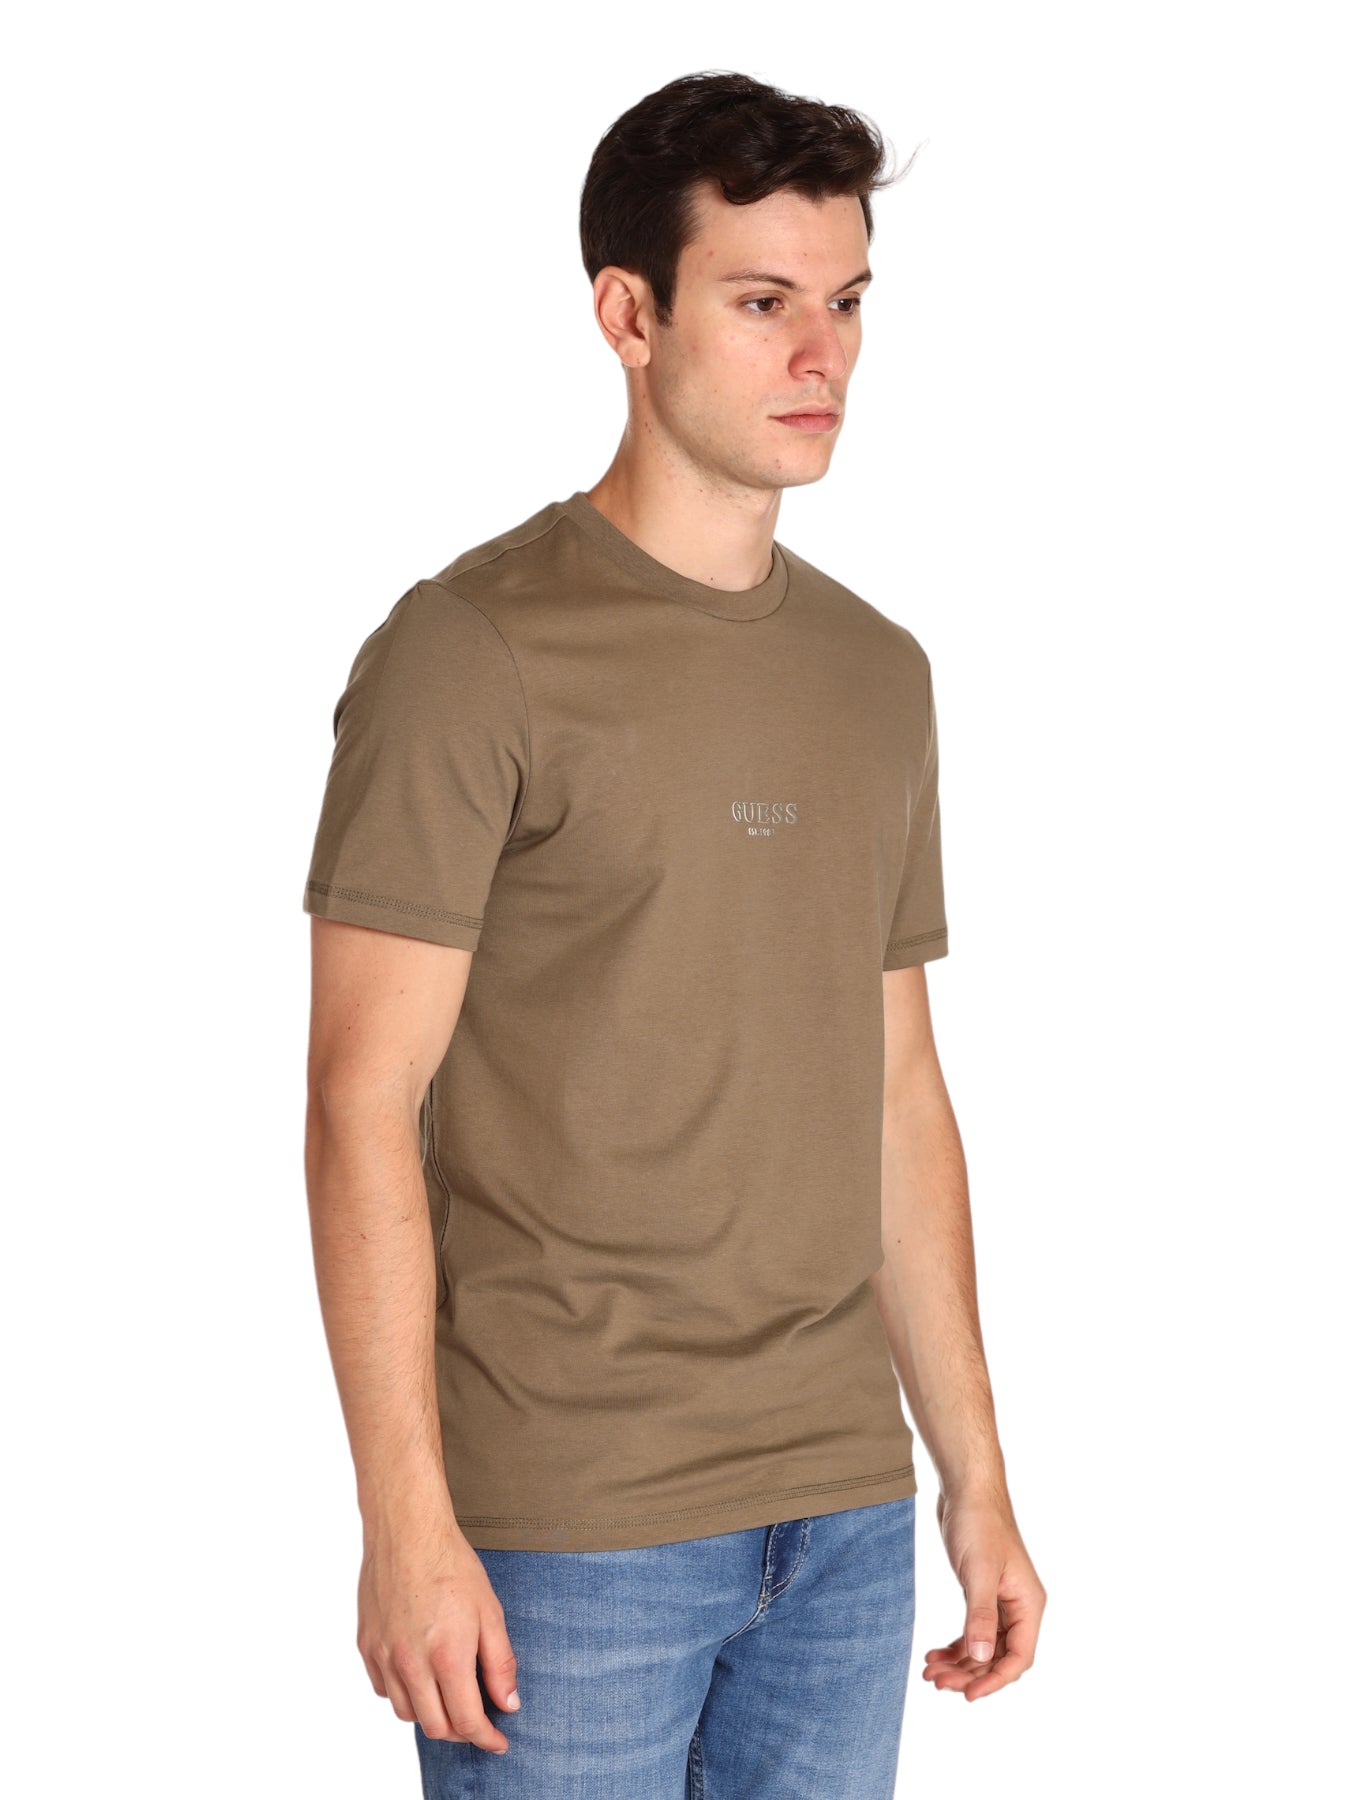 Guess Jeans Man T-Shirt M2yi72 Desert Green